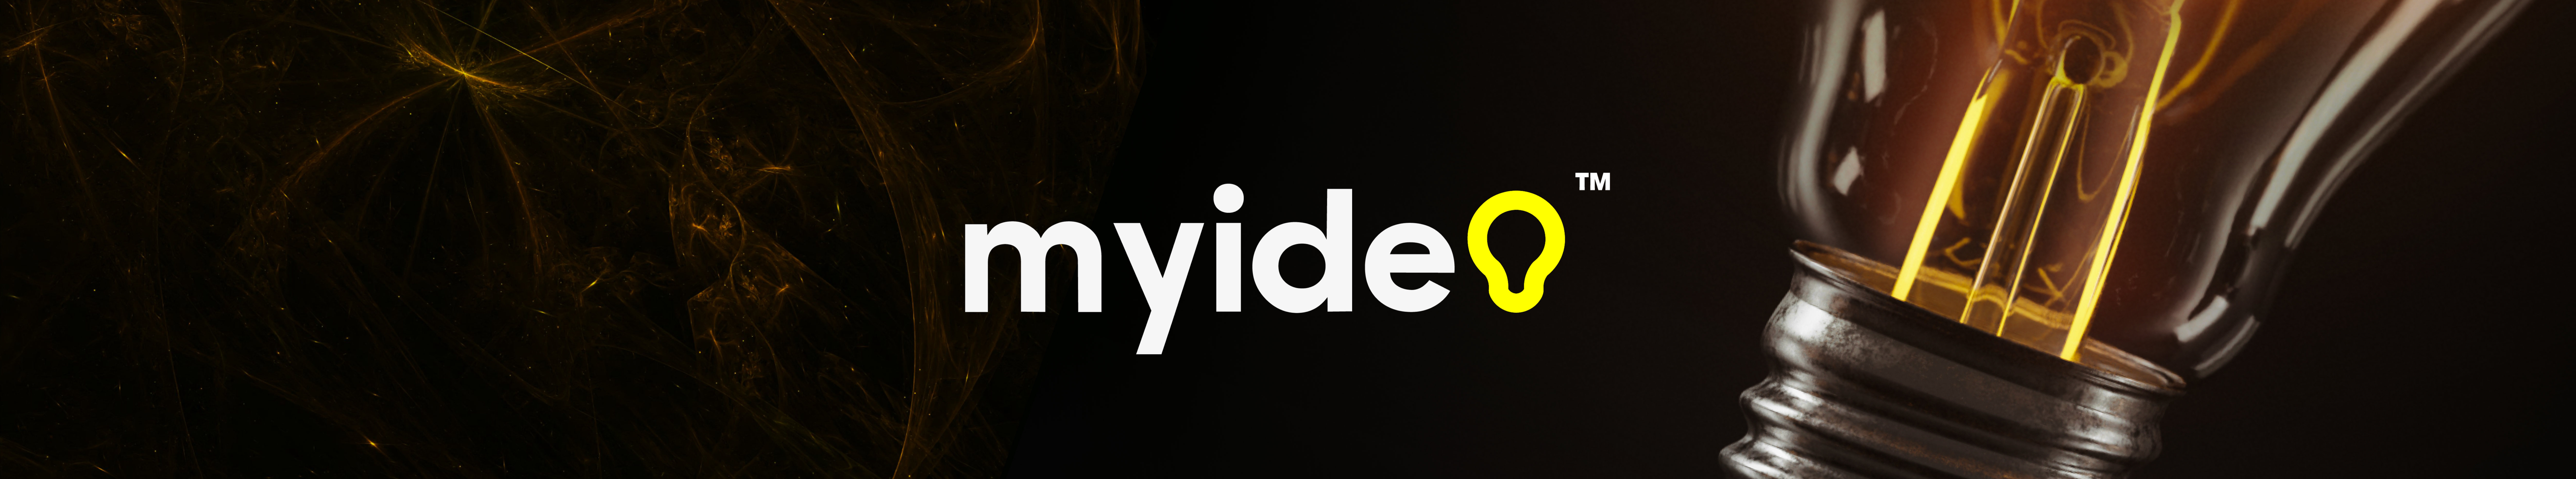 Myidea Design's profile banner